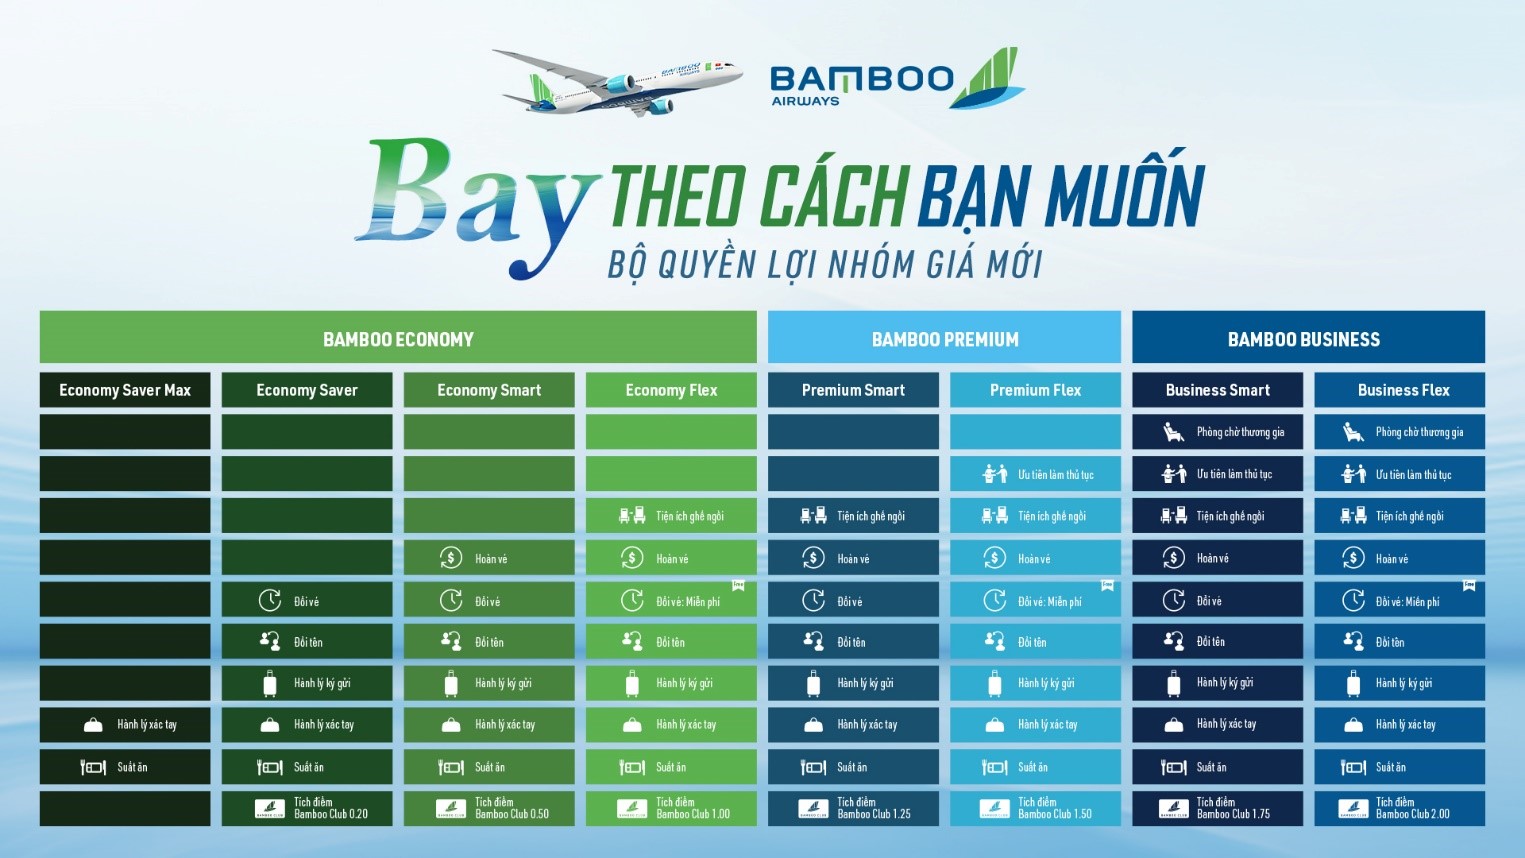 Hạng giá vé mới của Bamboo Airways